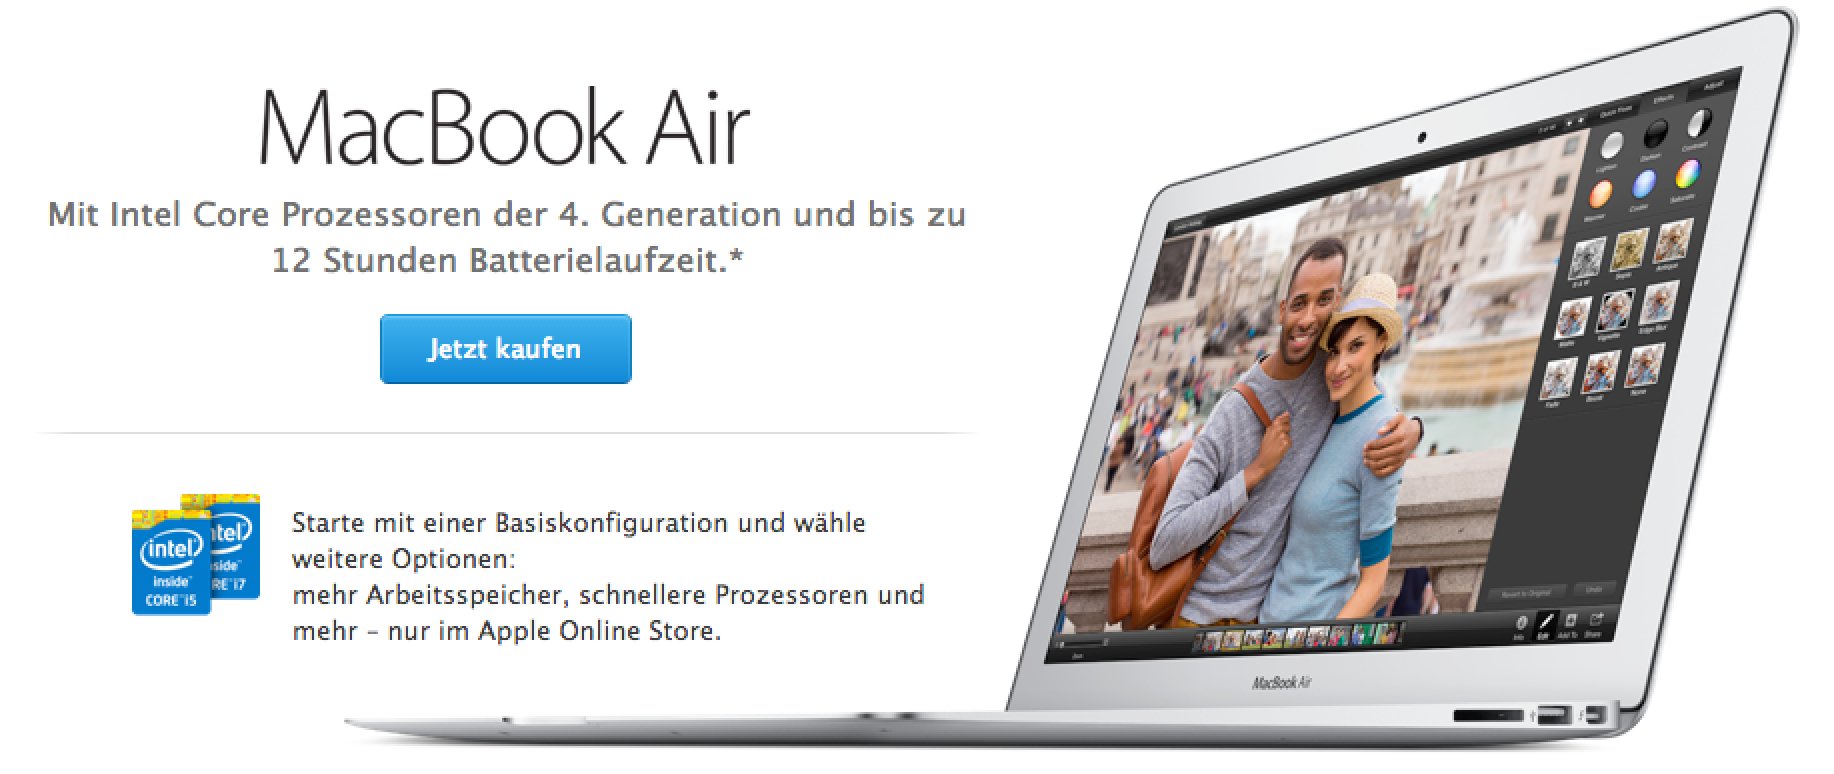 Macbook Air 2014 ist da - schneller und 100 Euro billiger! 9